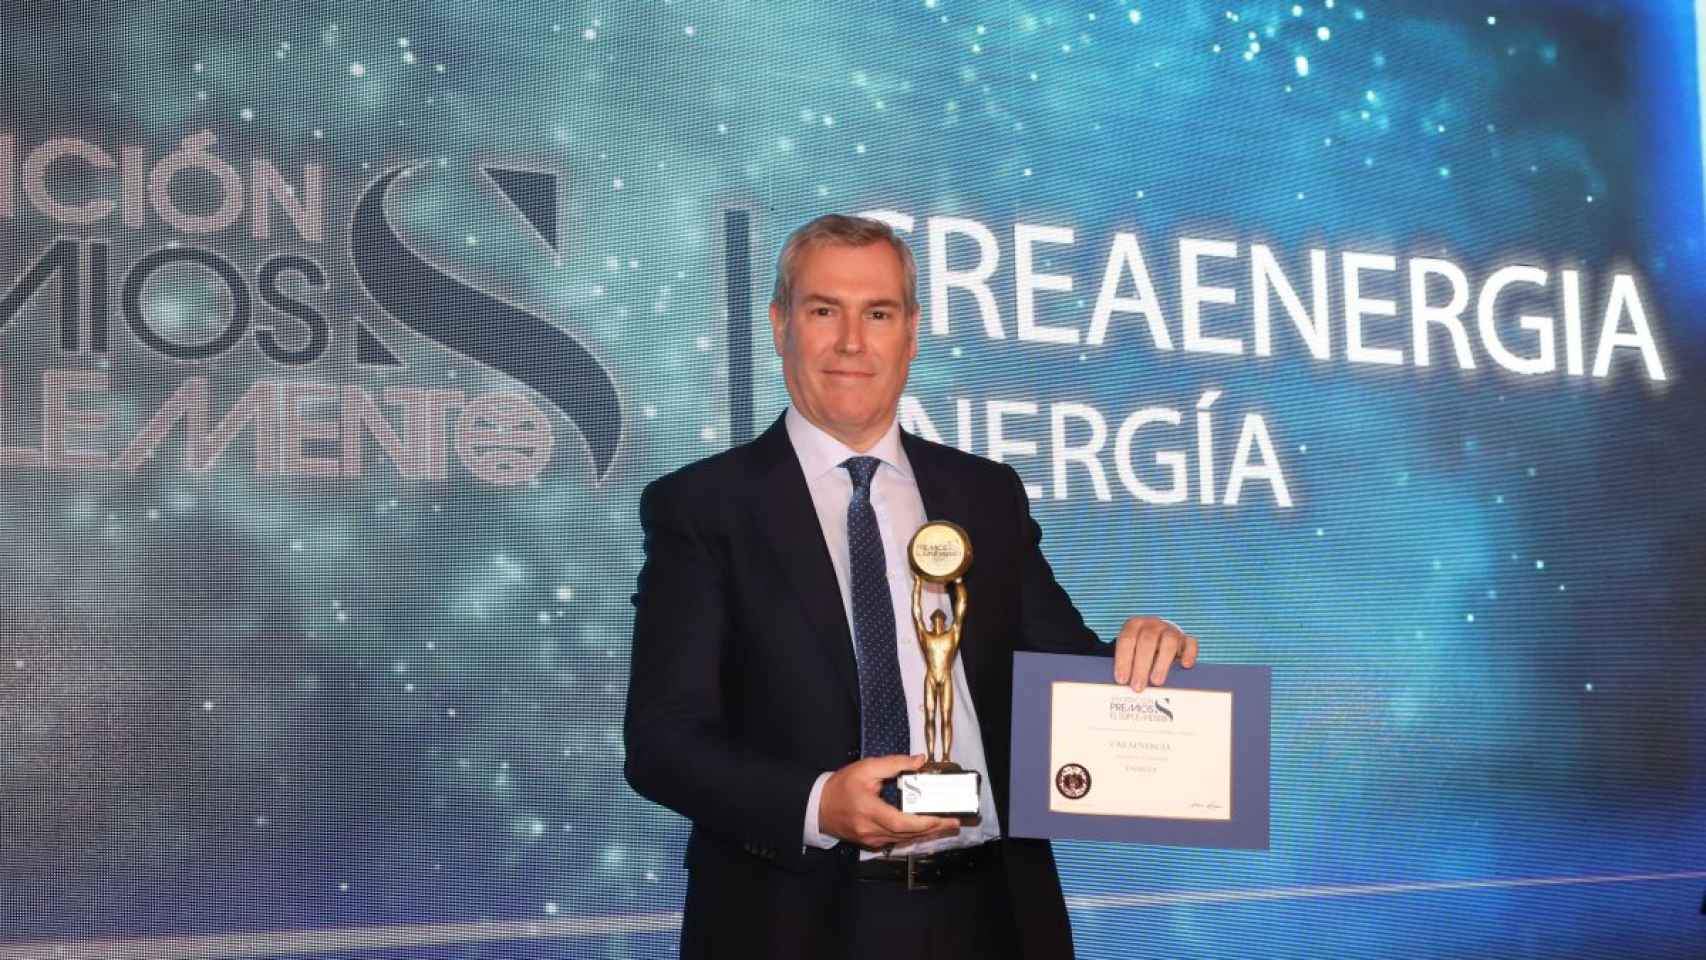 Emilio Rousaud, CEO de CreaEnergia en la gala de premios El Suplemento